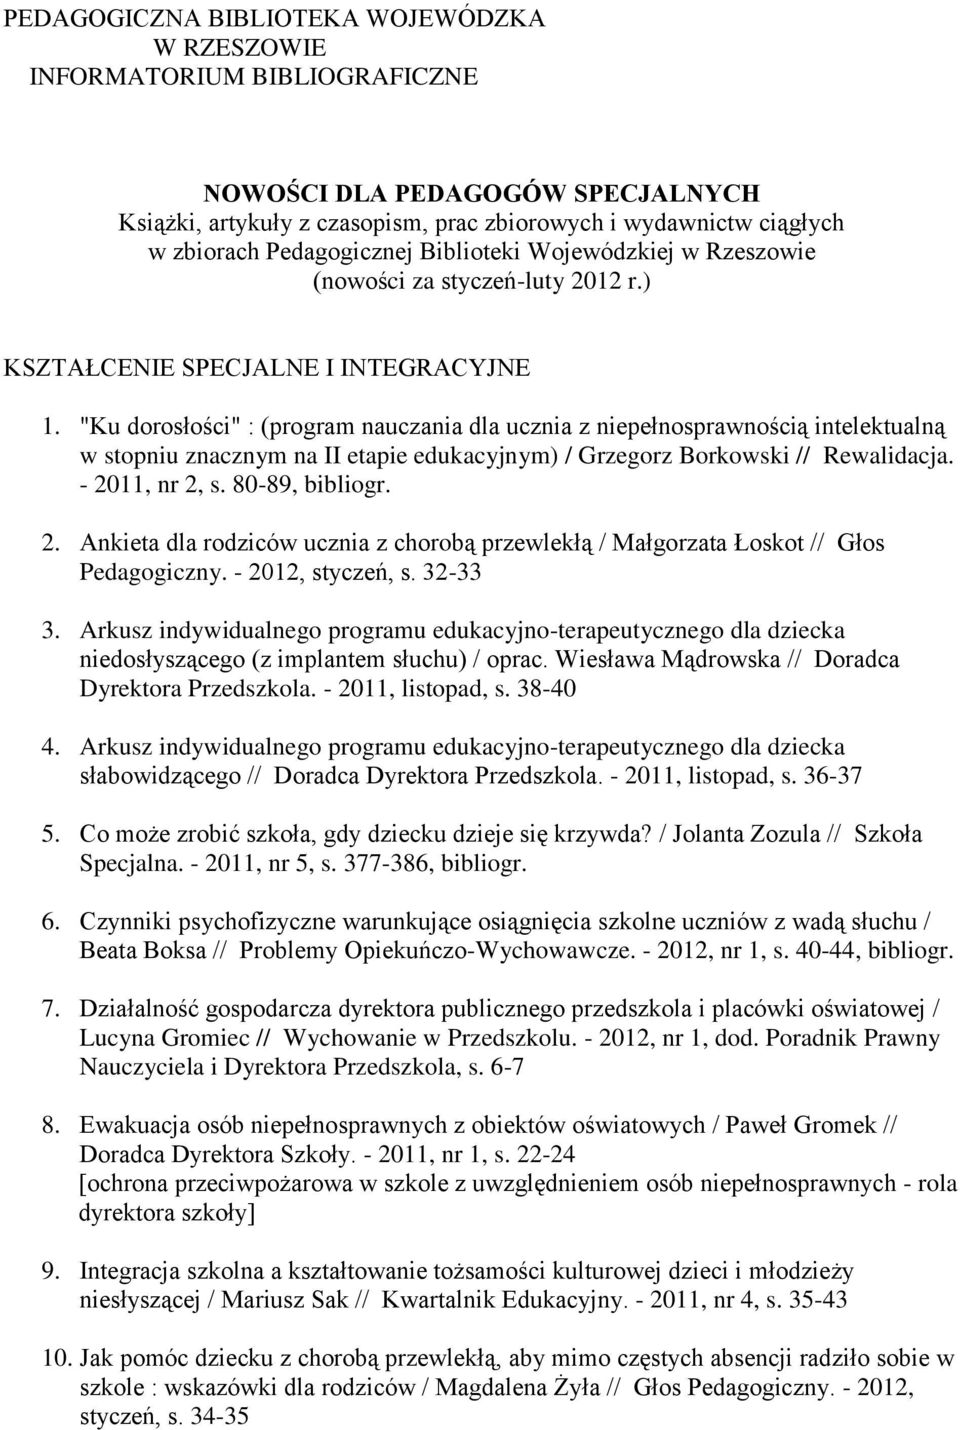 "Ku dorosłości" : (program nauczania dla ucznia z niepełnosprawnością intelektualną w stopniu znacznym na II etapie edukacyjnym) / Grzegorz Borkowski // Rewalidacja. - 2011, nr 2, s. 80-89, bibliogr.